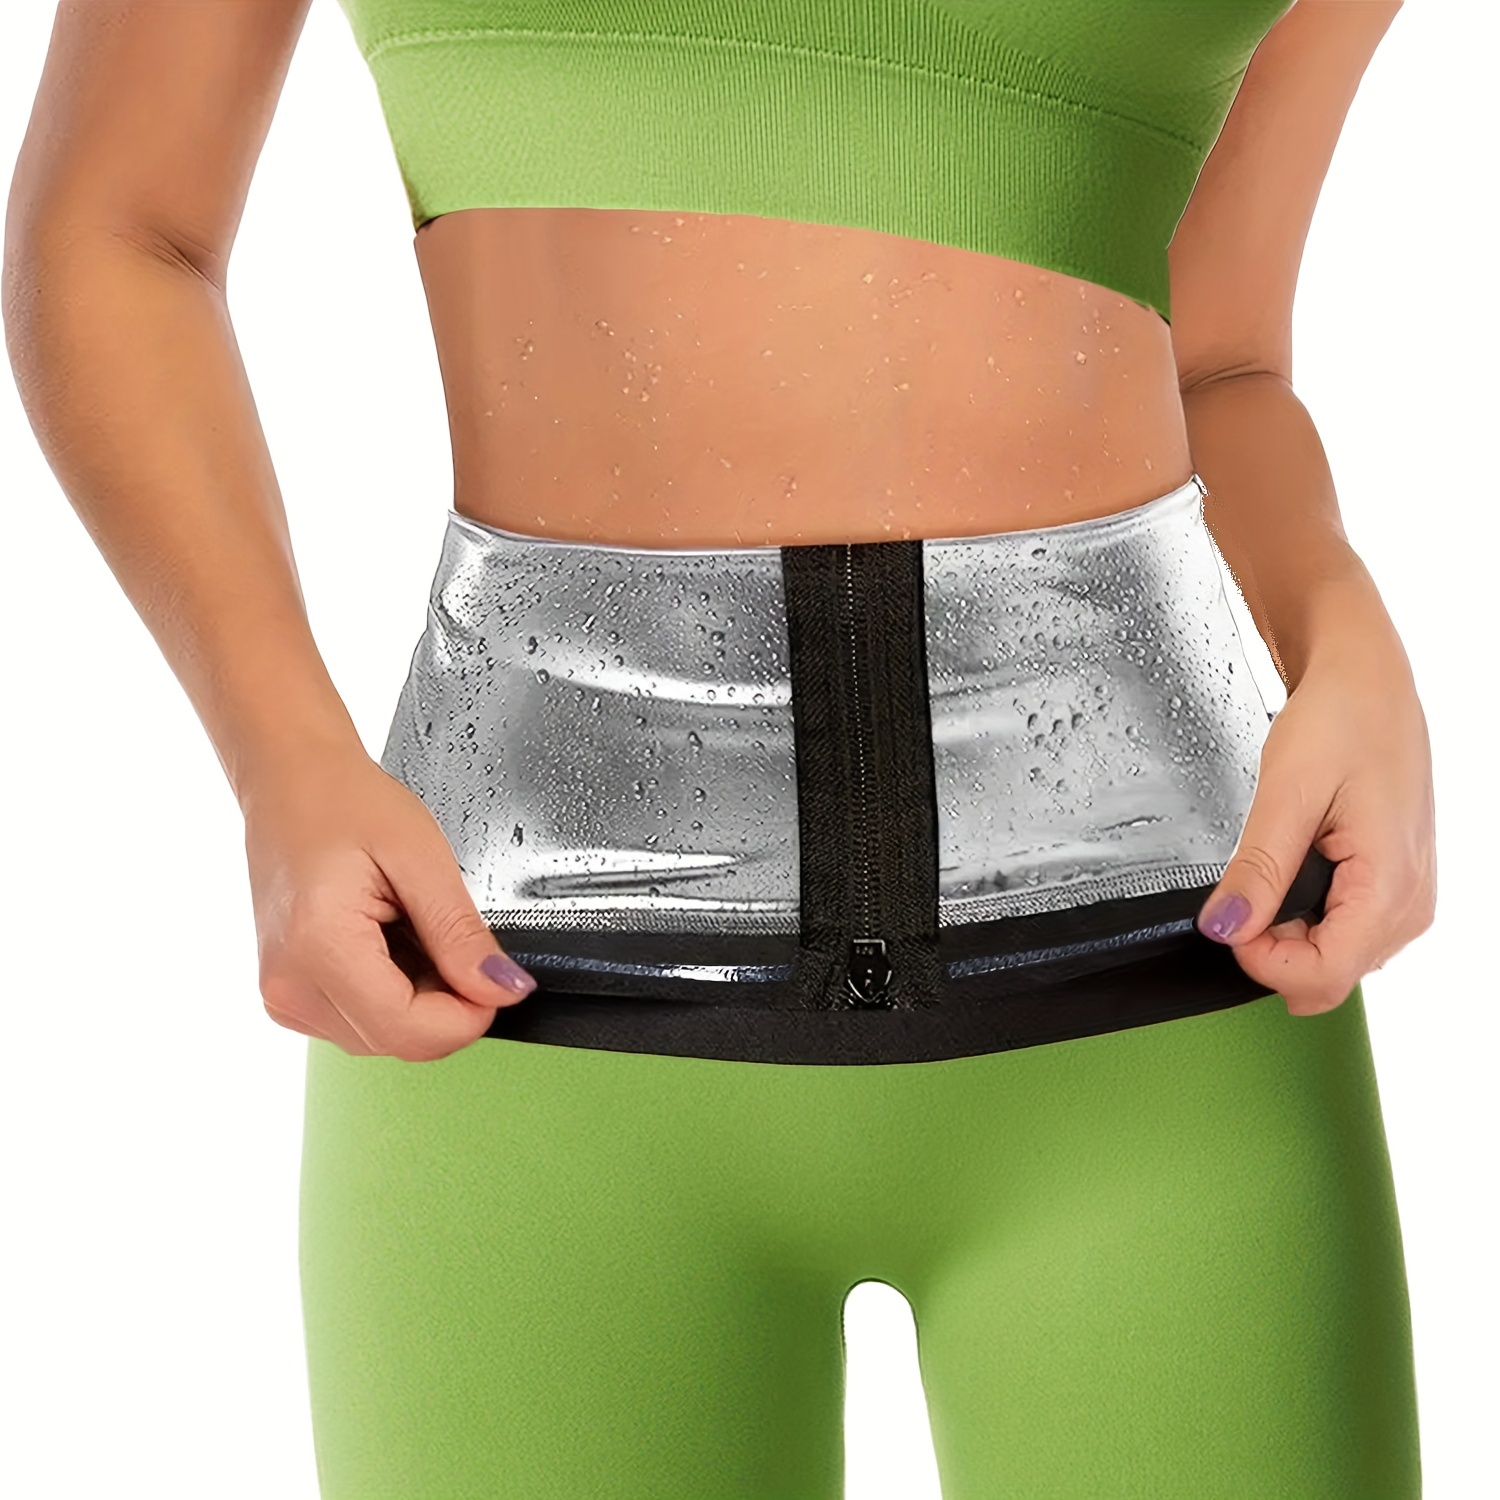 Ladies Corset Girdle Fat Burner Exercise Body Shaper Breathable Comfotable  EIT 